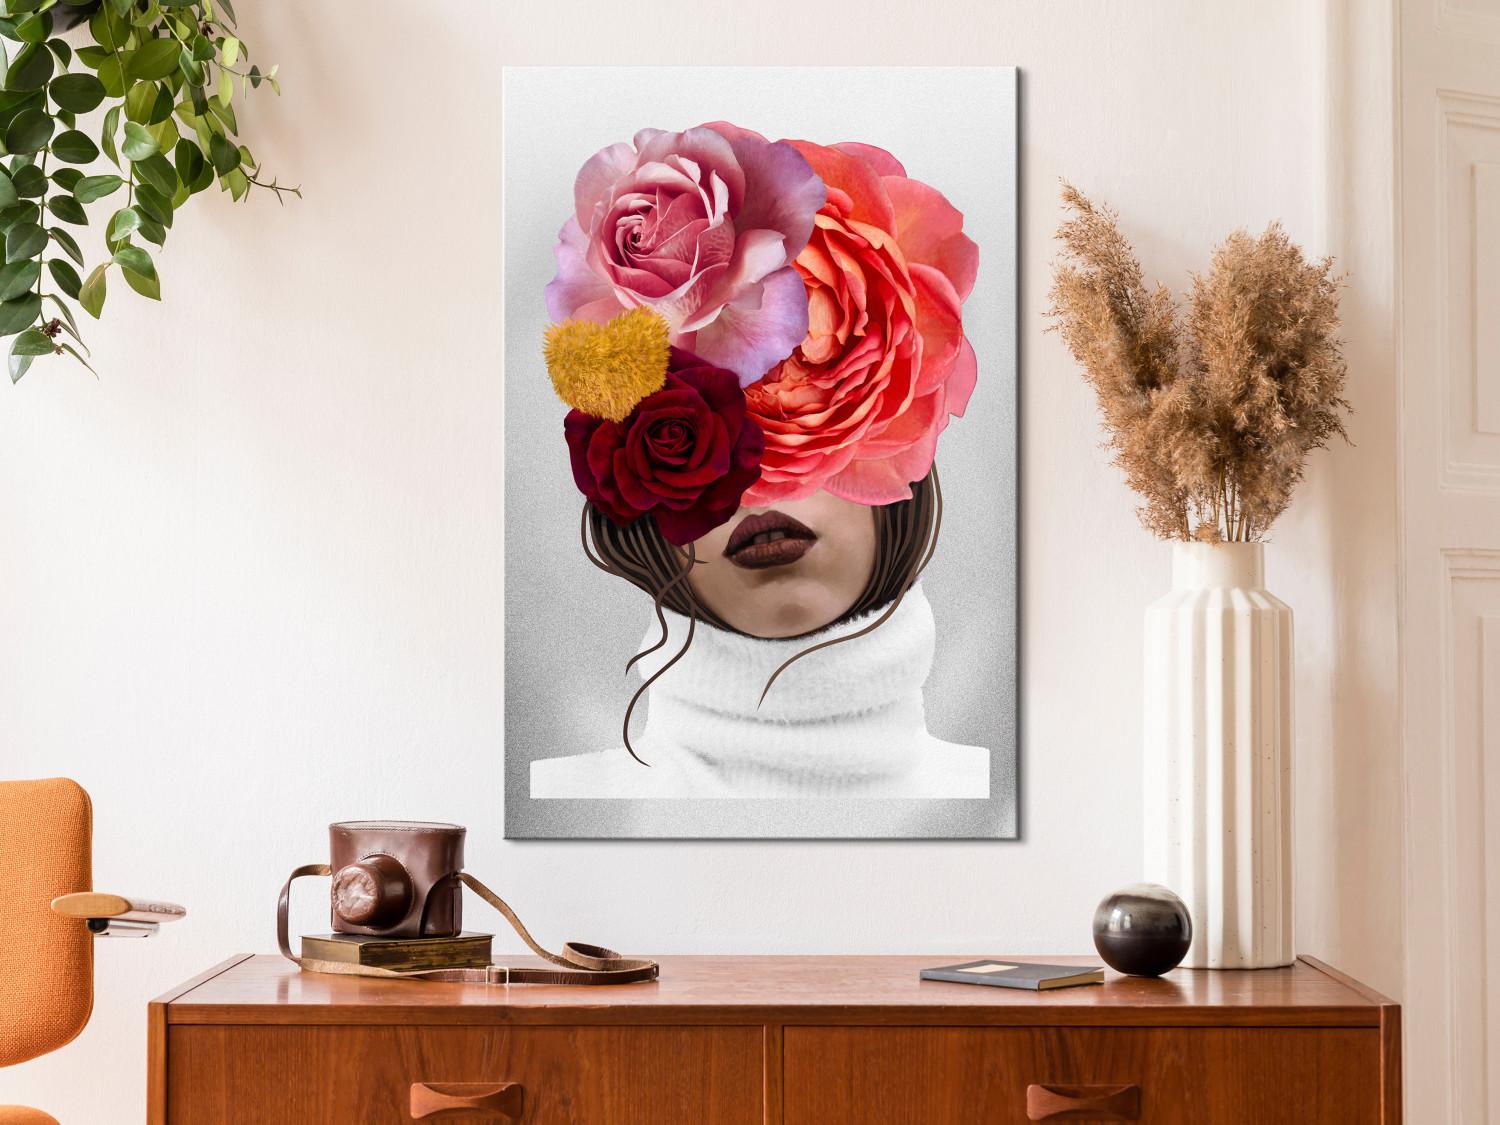 Cuadro decorativo Peonías y rosas cubriendo el rostro de una mujer - retrato abstracto